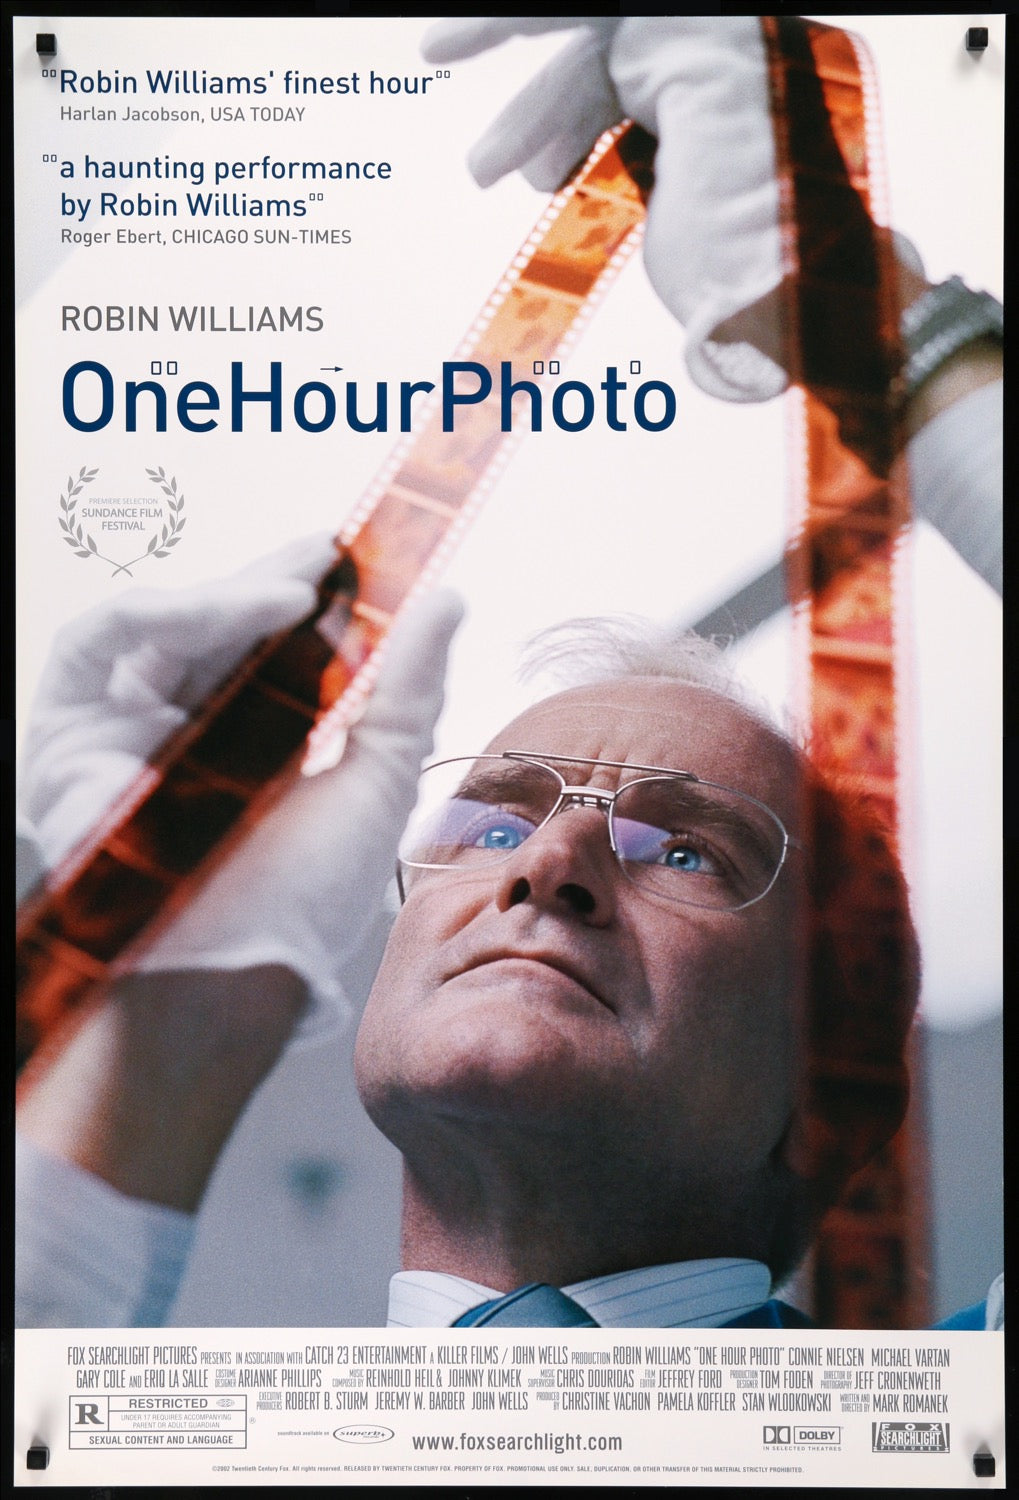 One Hour Photo (2002) original movie poster for sale at Original Film Art